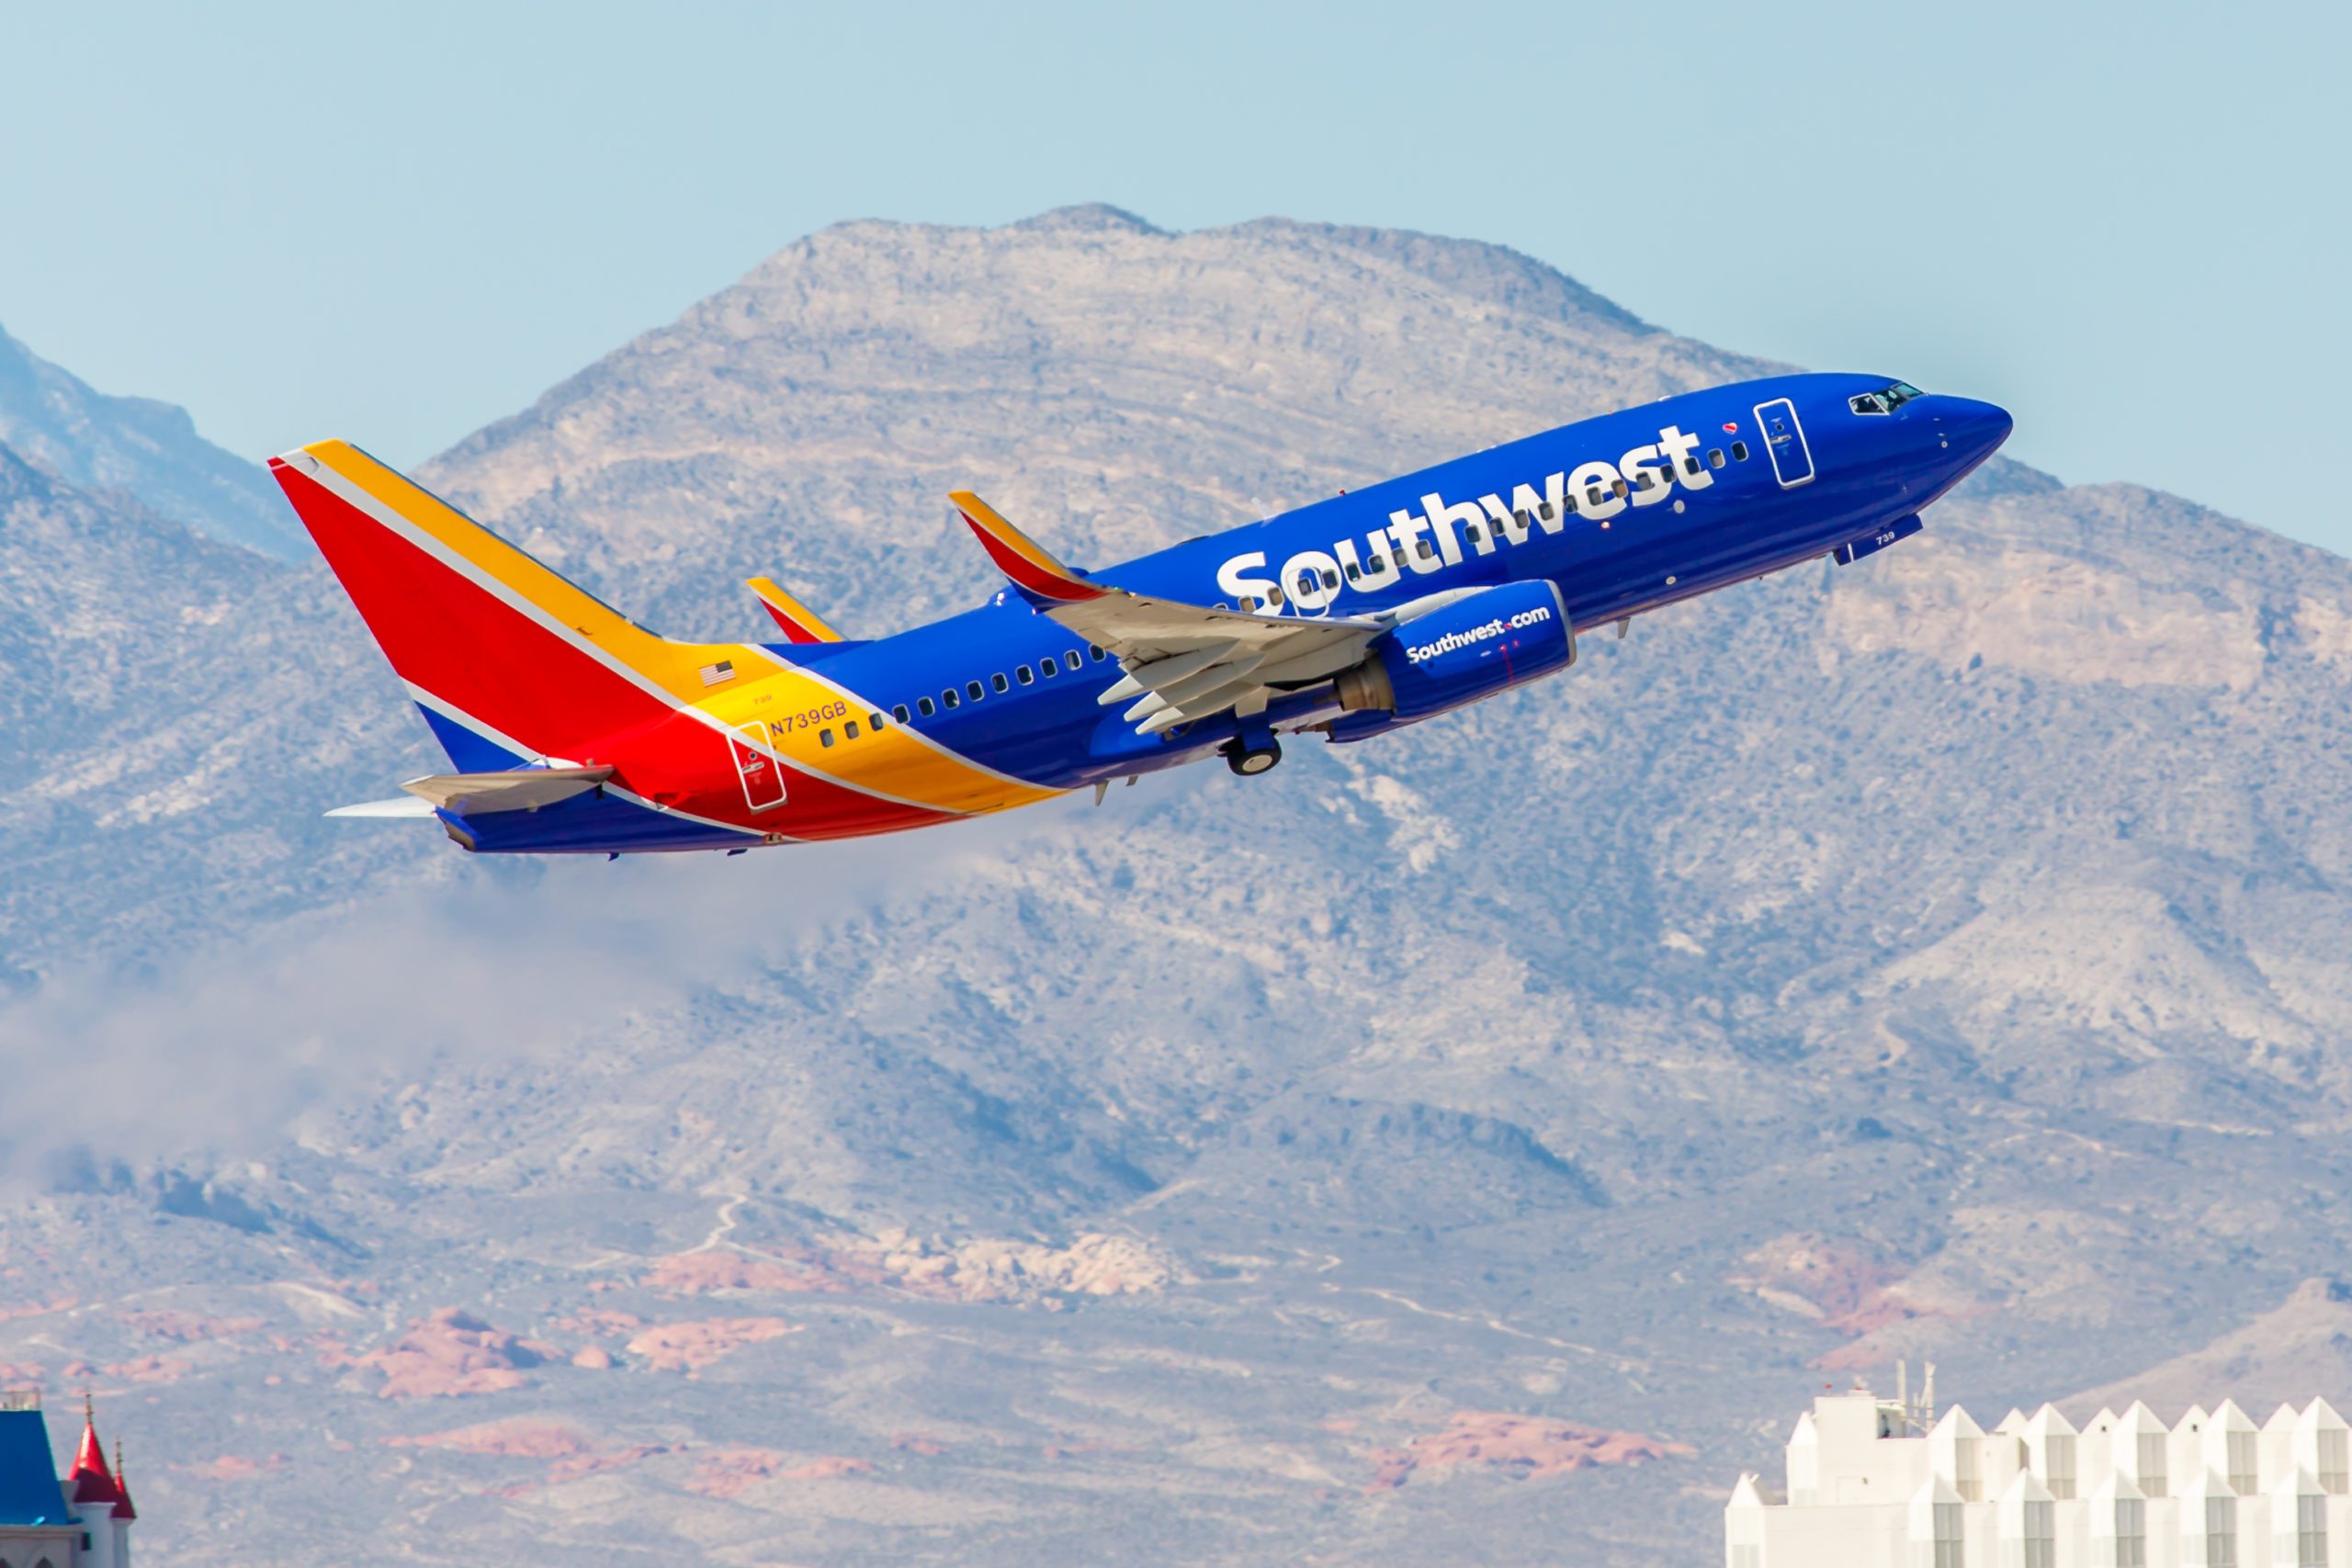 Boeing 737 Southwest Airlines despega del Aeropuerto Internacional McCarran